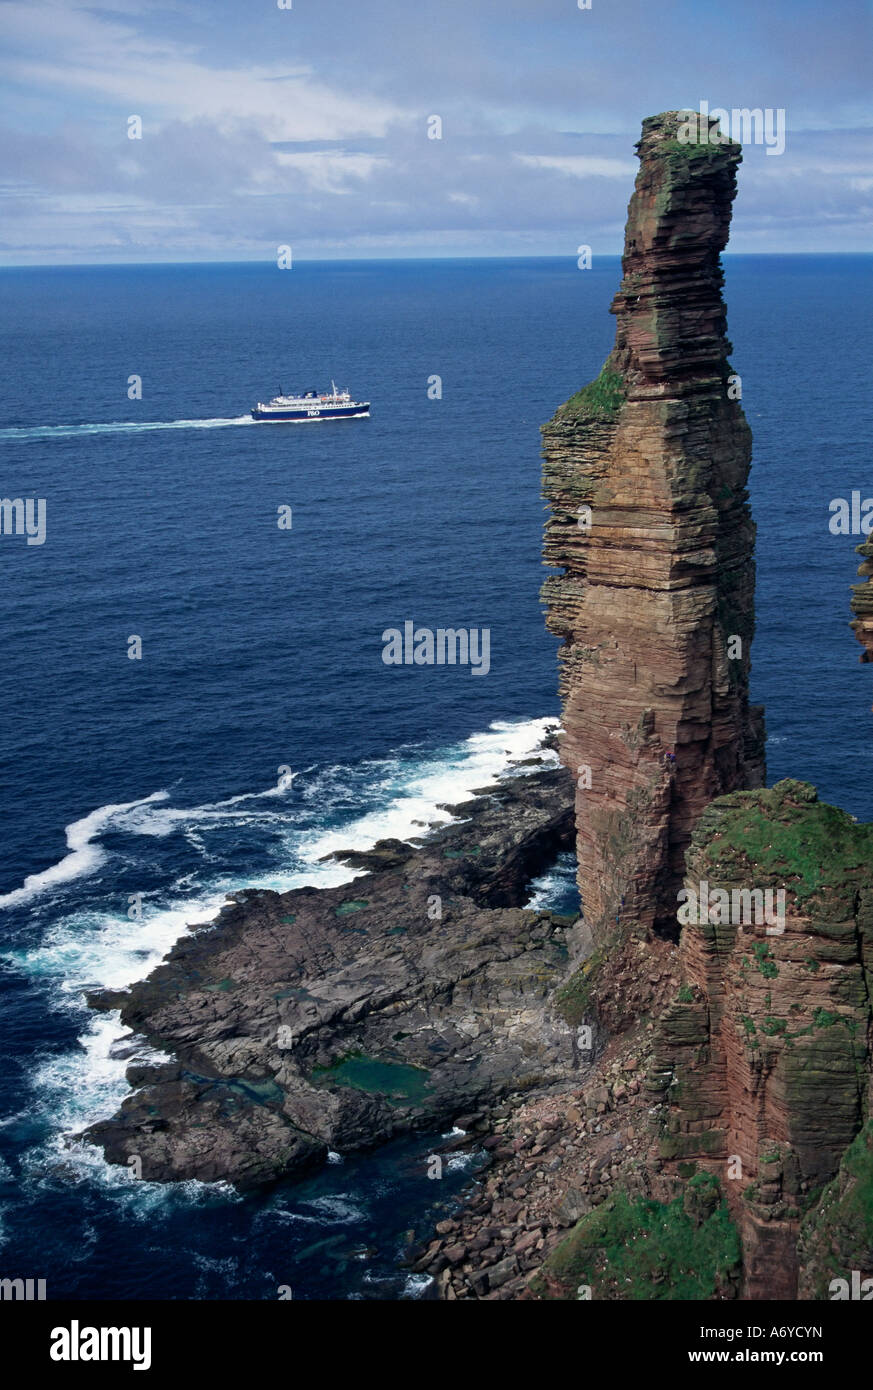 Vieil Homme de grès Hoy pile mer 137m de haut, avec en arrière-plan ferry Hoy Orkney Islands Ecosse Royaume-Uni Europe Banque D'Images